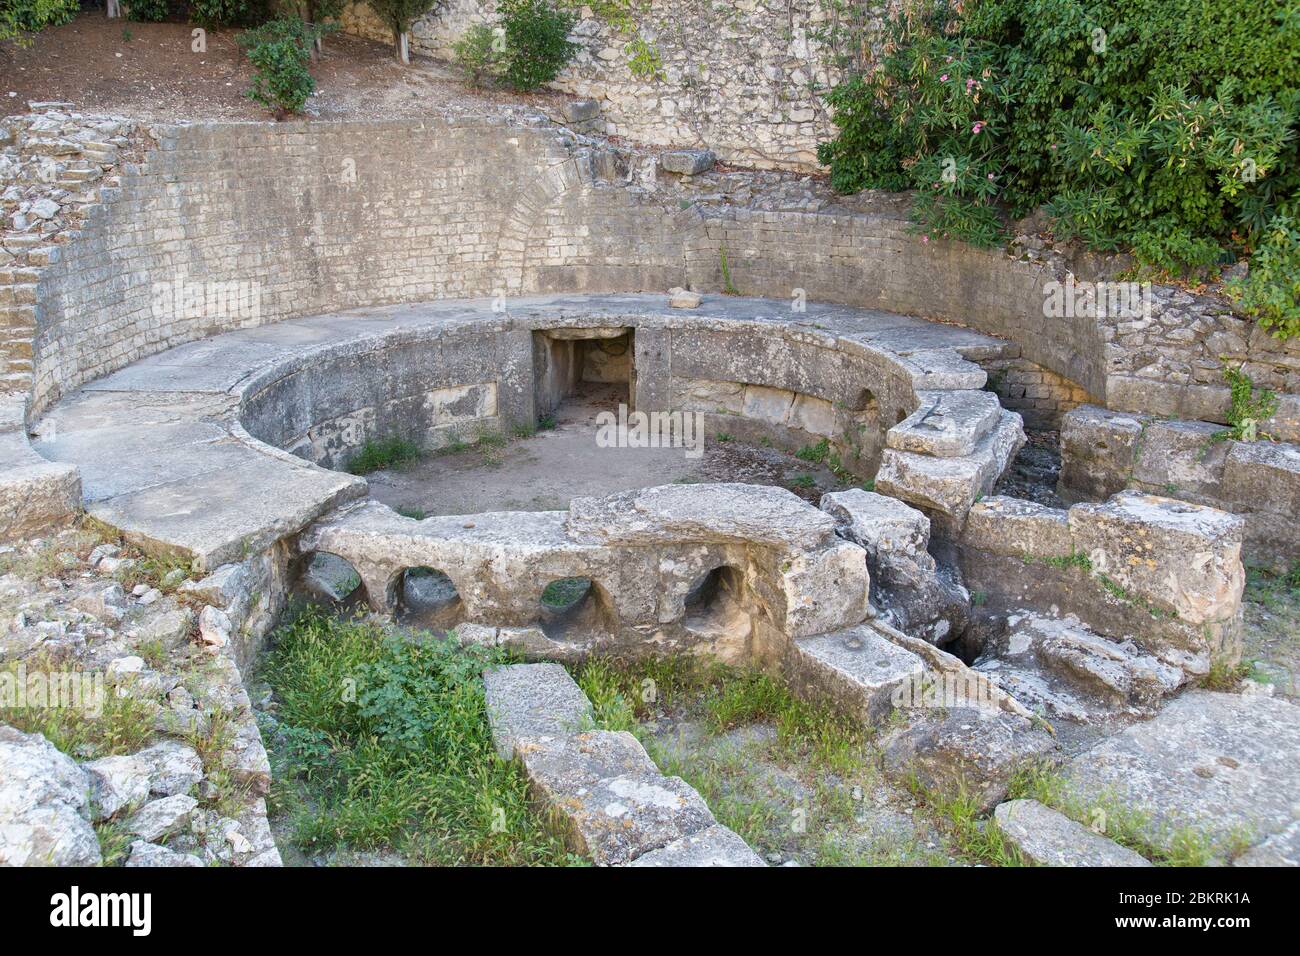 Francia, Gard, Nimes, vestige castellum divisorium, o castellum aquae, monumento romano del 1 ° secolo per distribuire l'acqua nella città romana Foto Stock